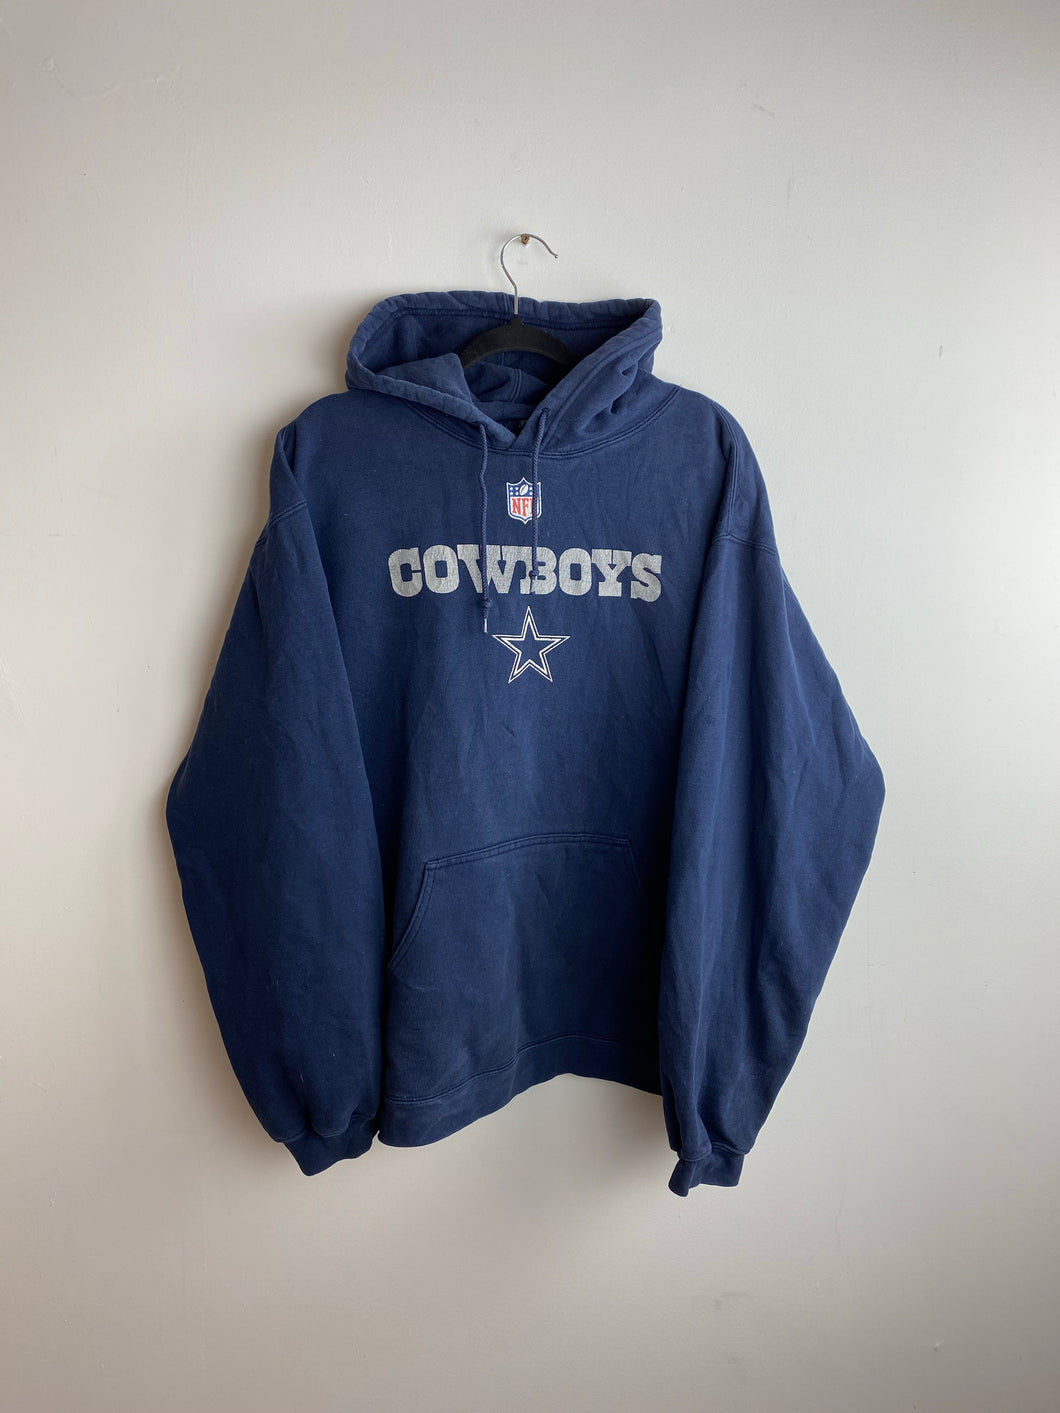 90s cowboys hoodie